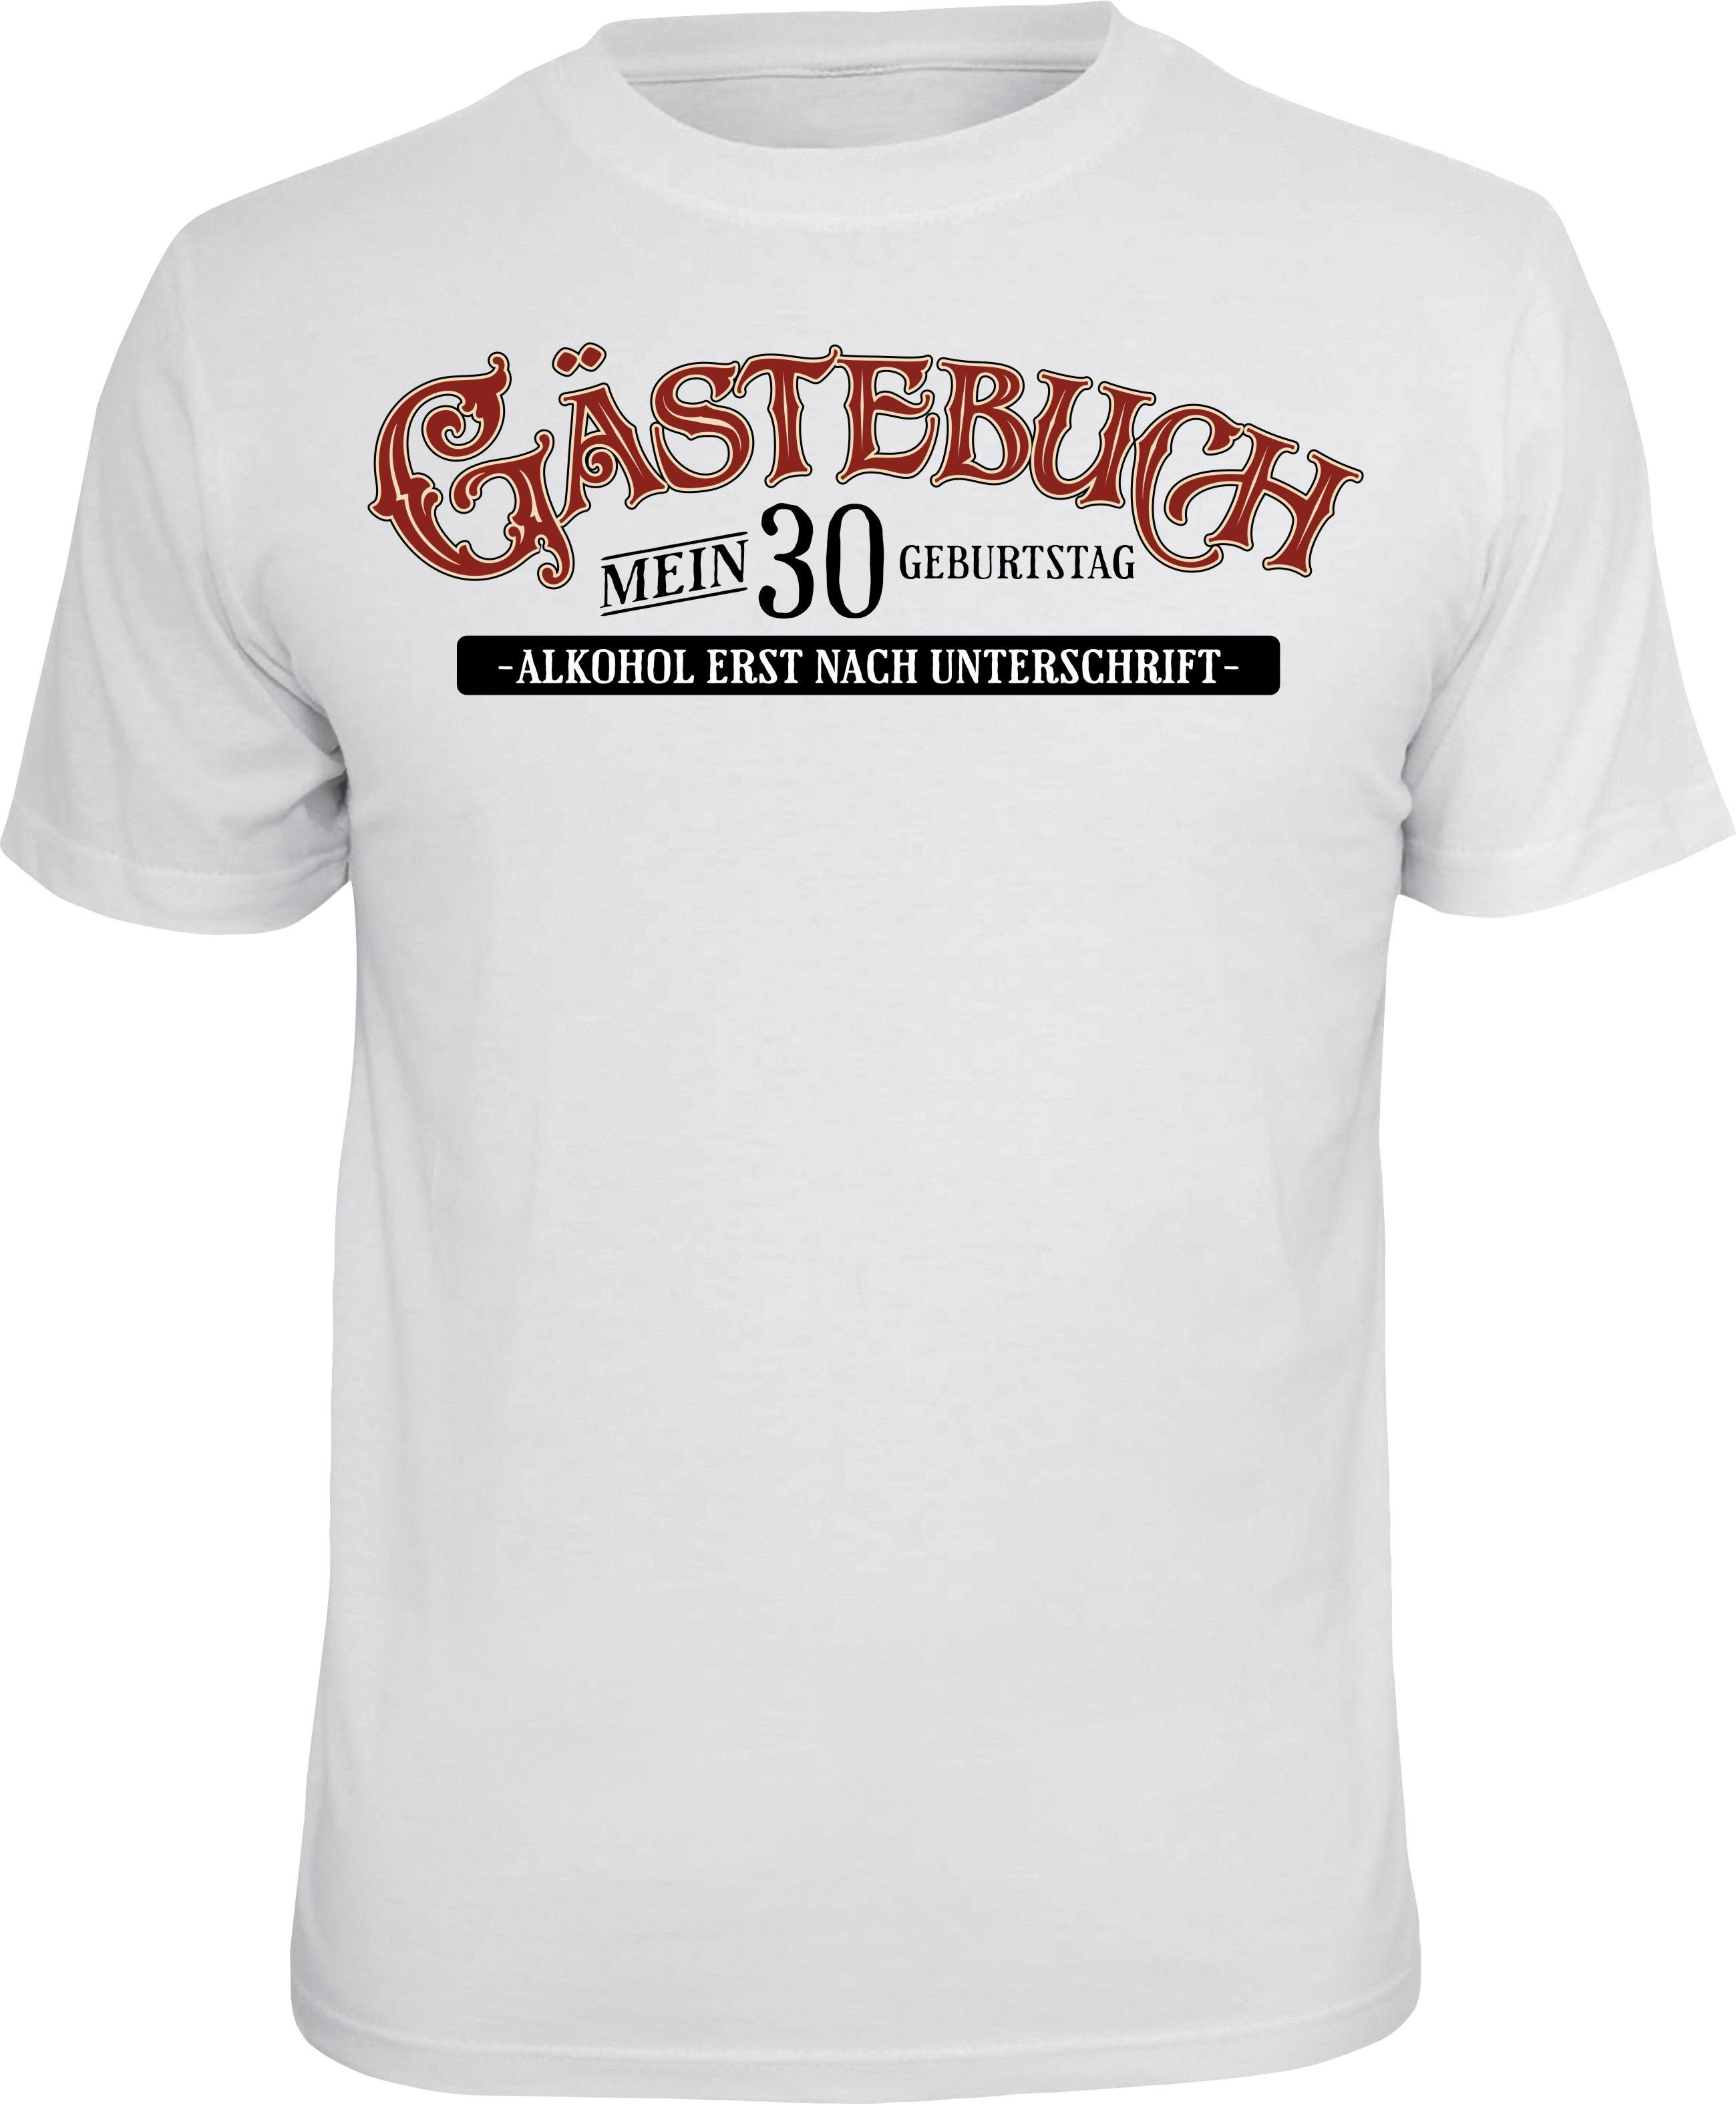 Rahmenlos T-Shirt Gästebuch als Geschenk zum 30. Geburtstag | T-Shirts